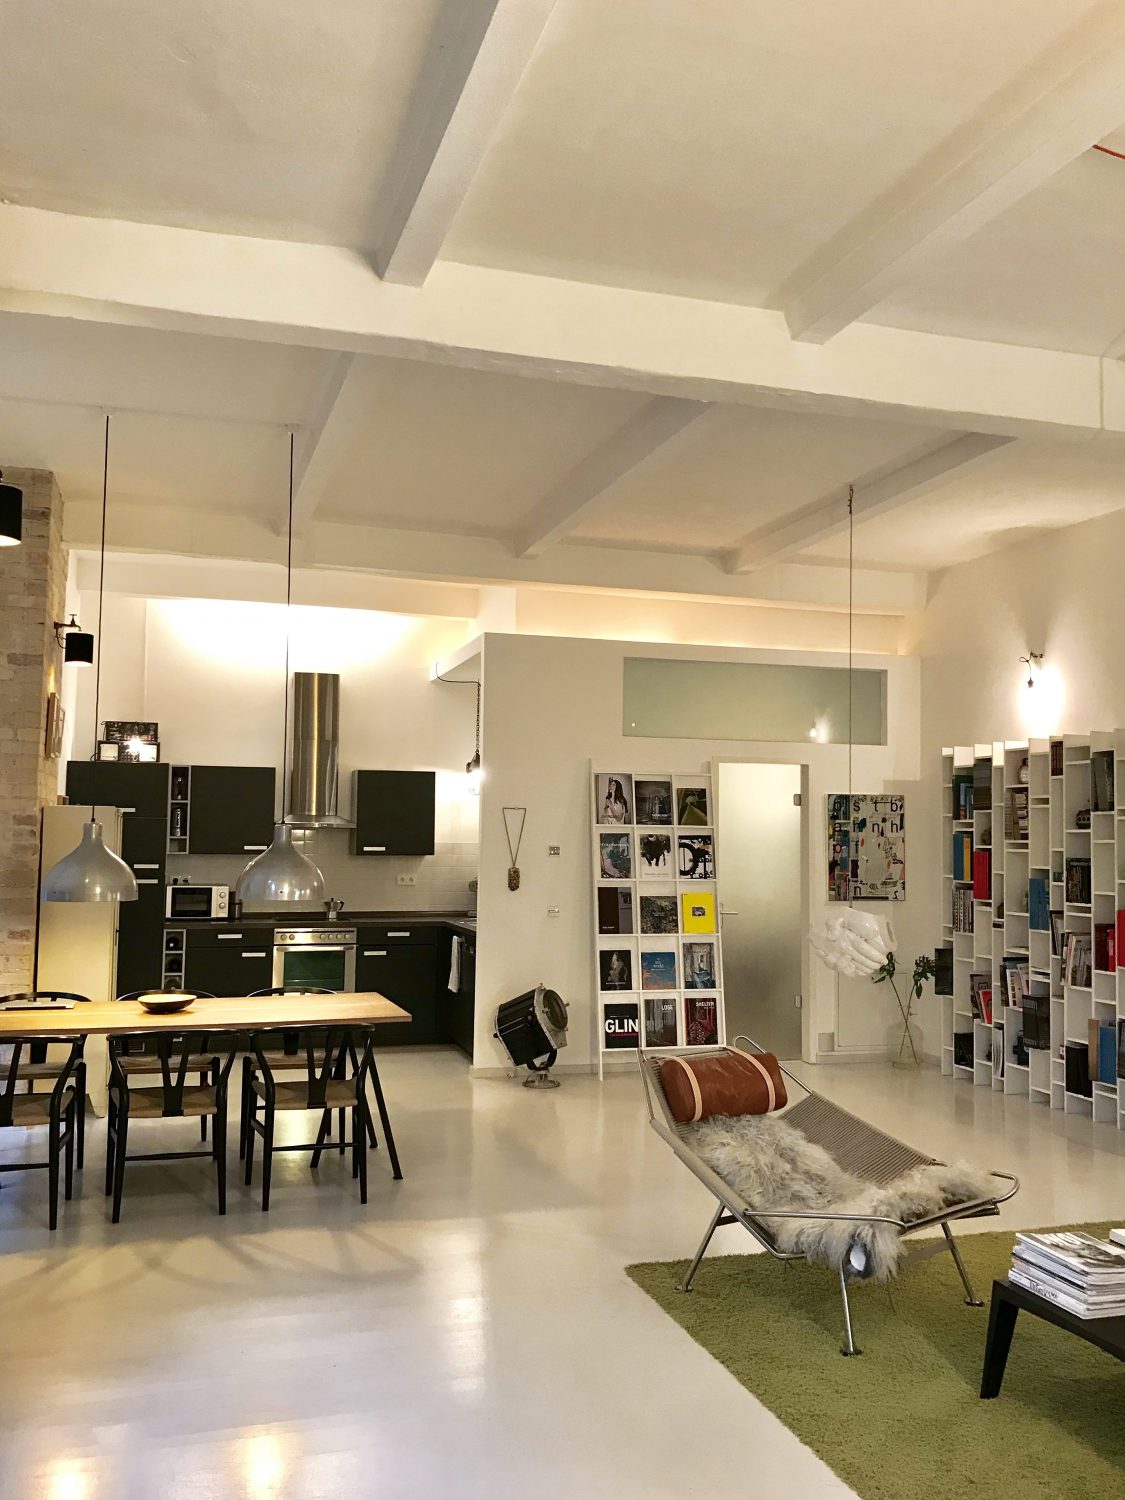 René Holm's Studio Loft in Berlin